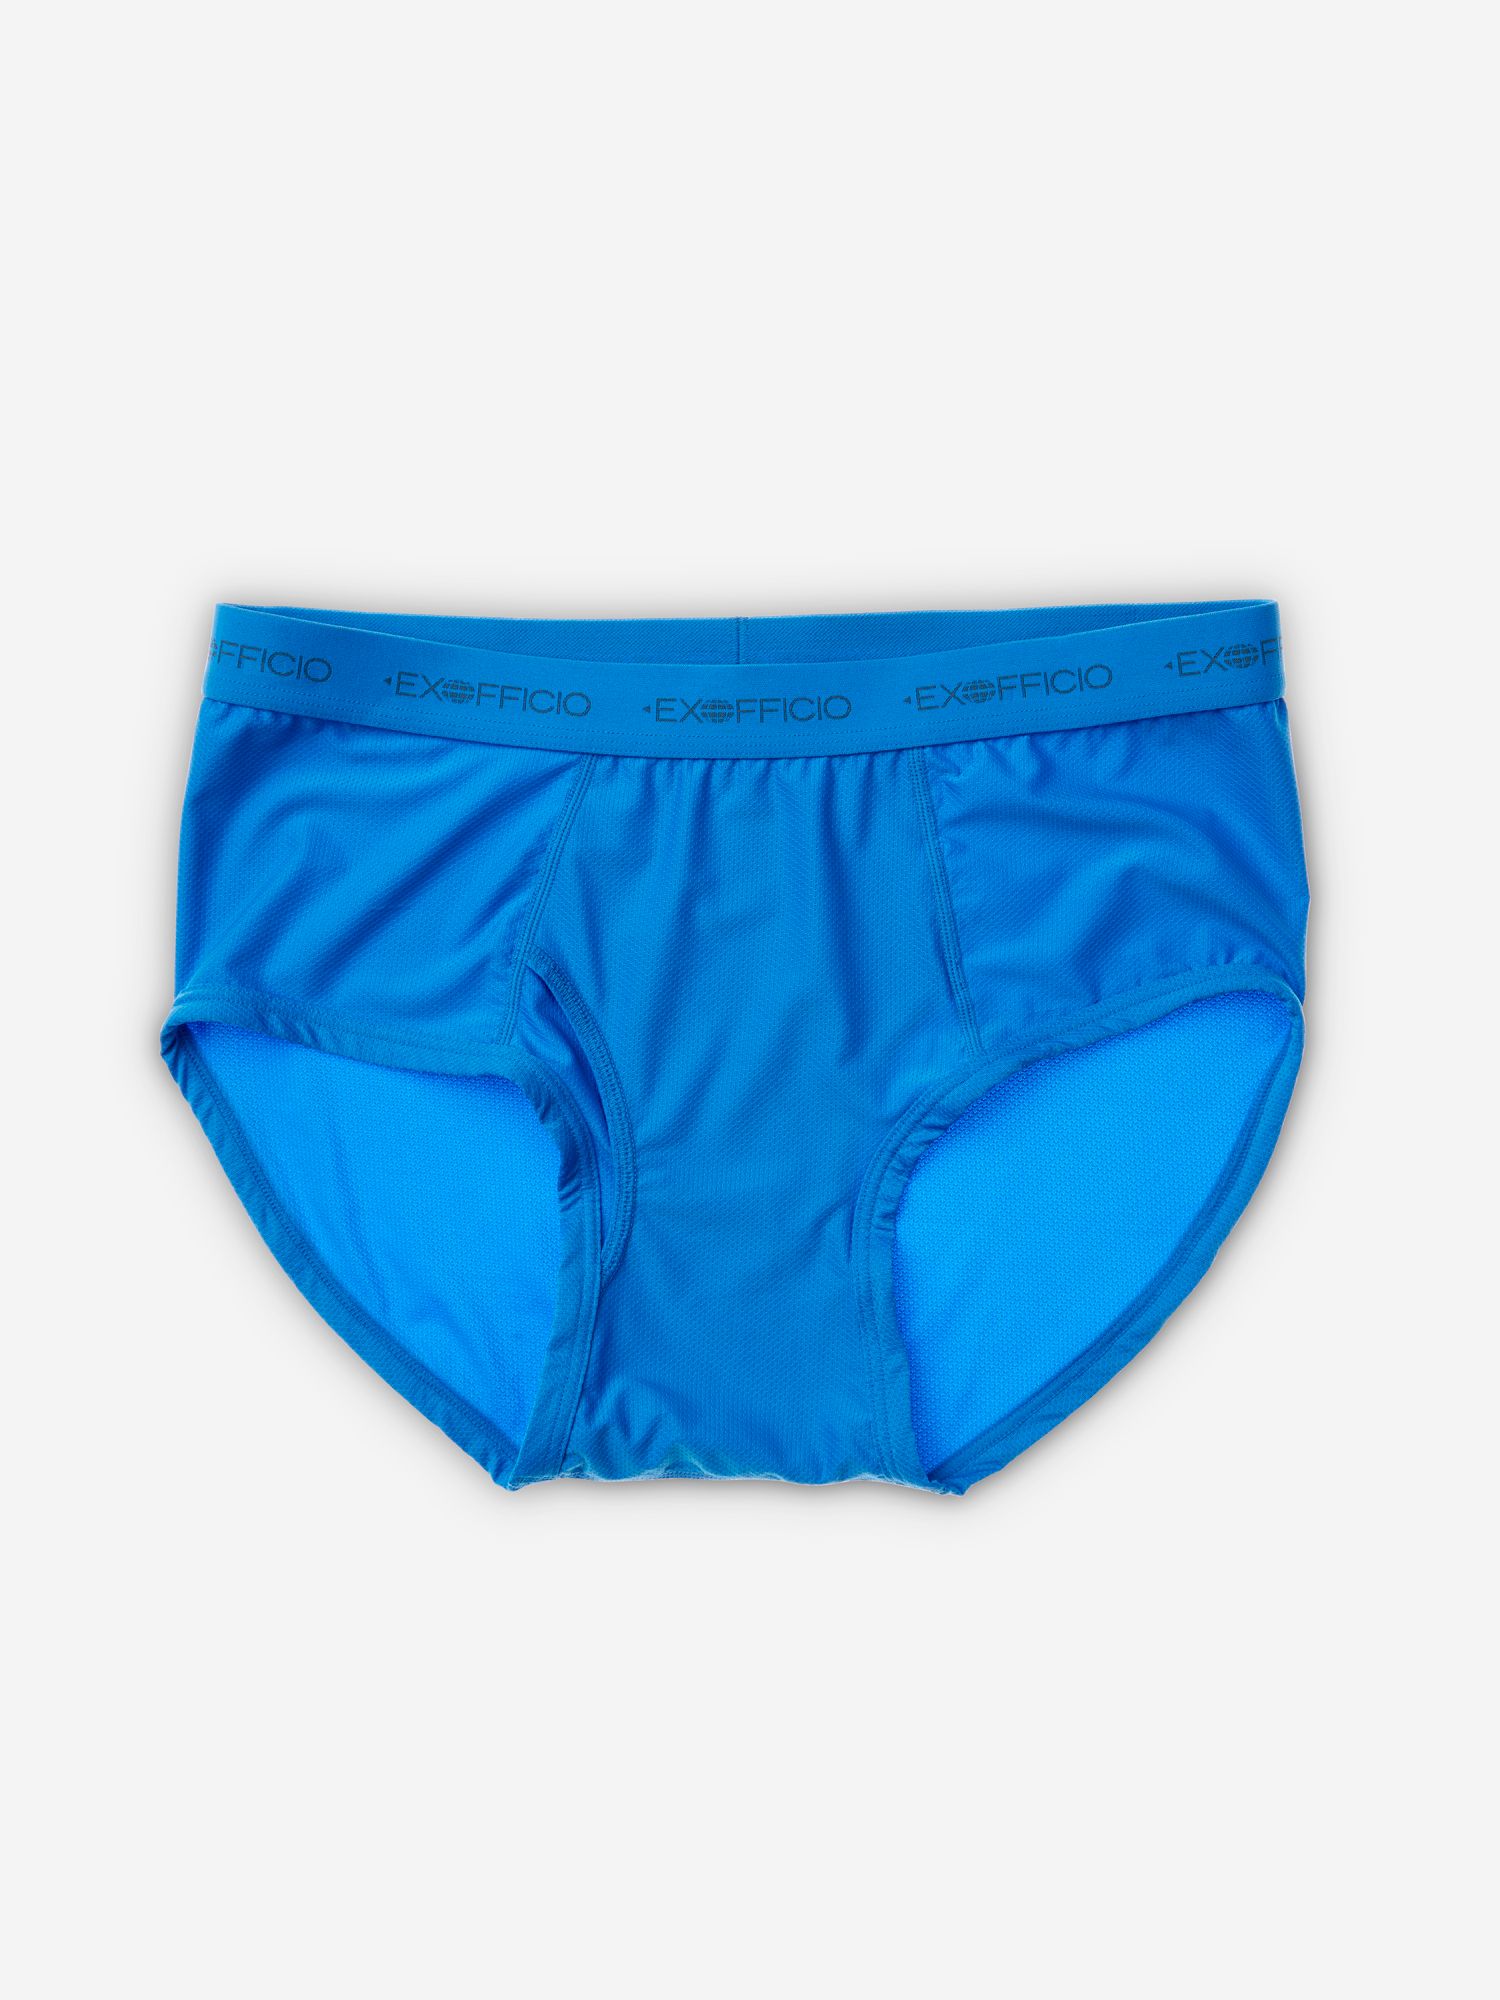 ExOfficio Men's 182055 Give-N-Go Brief Underwear Black Size XL for